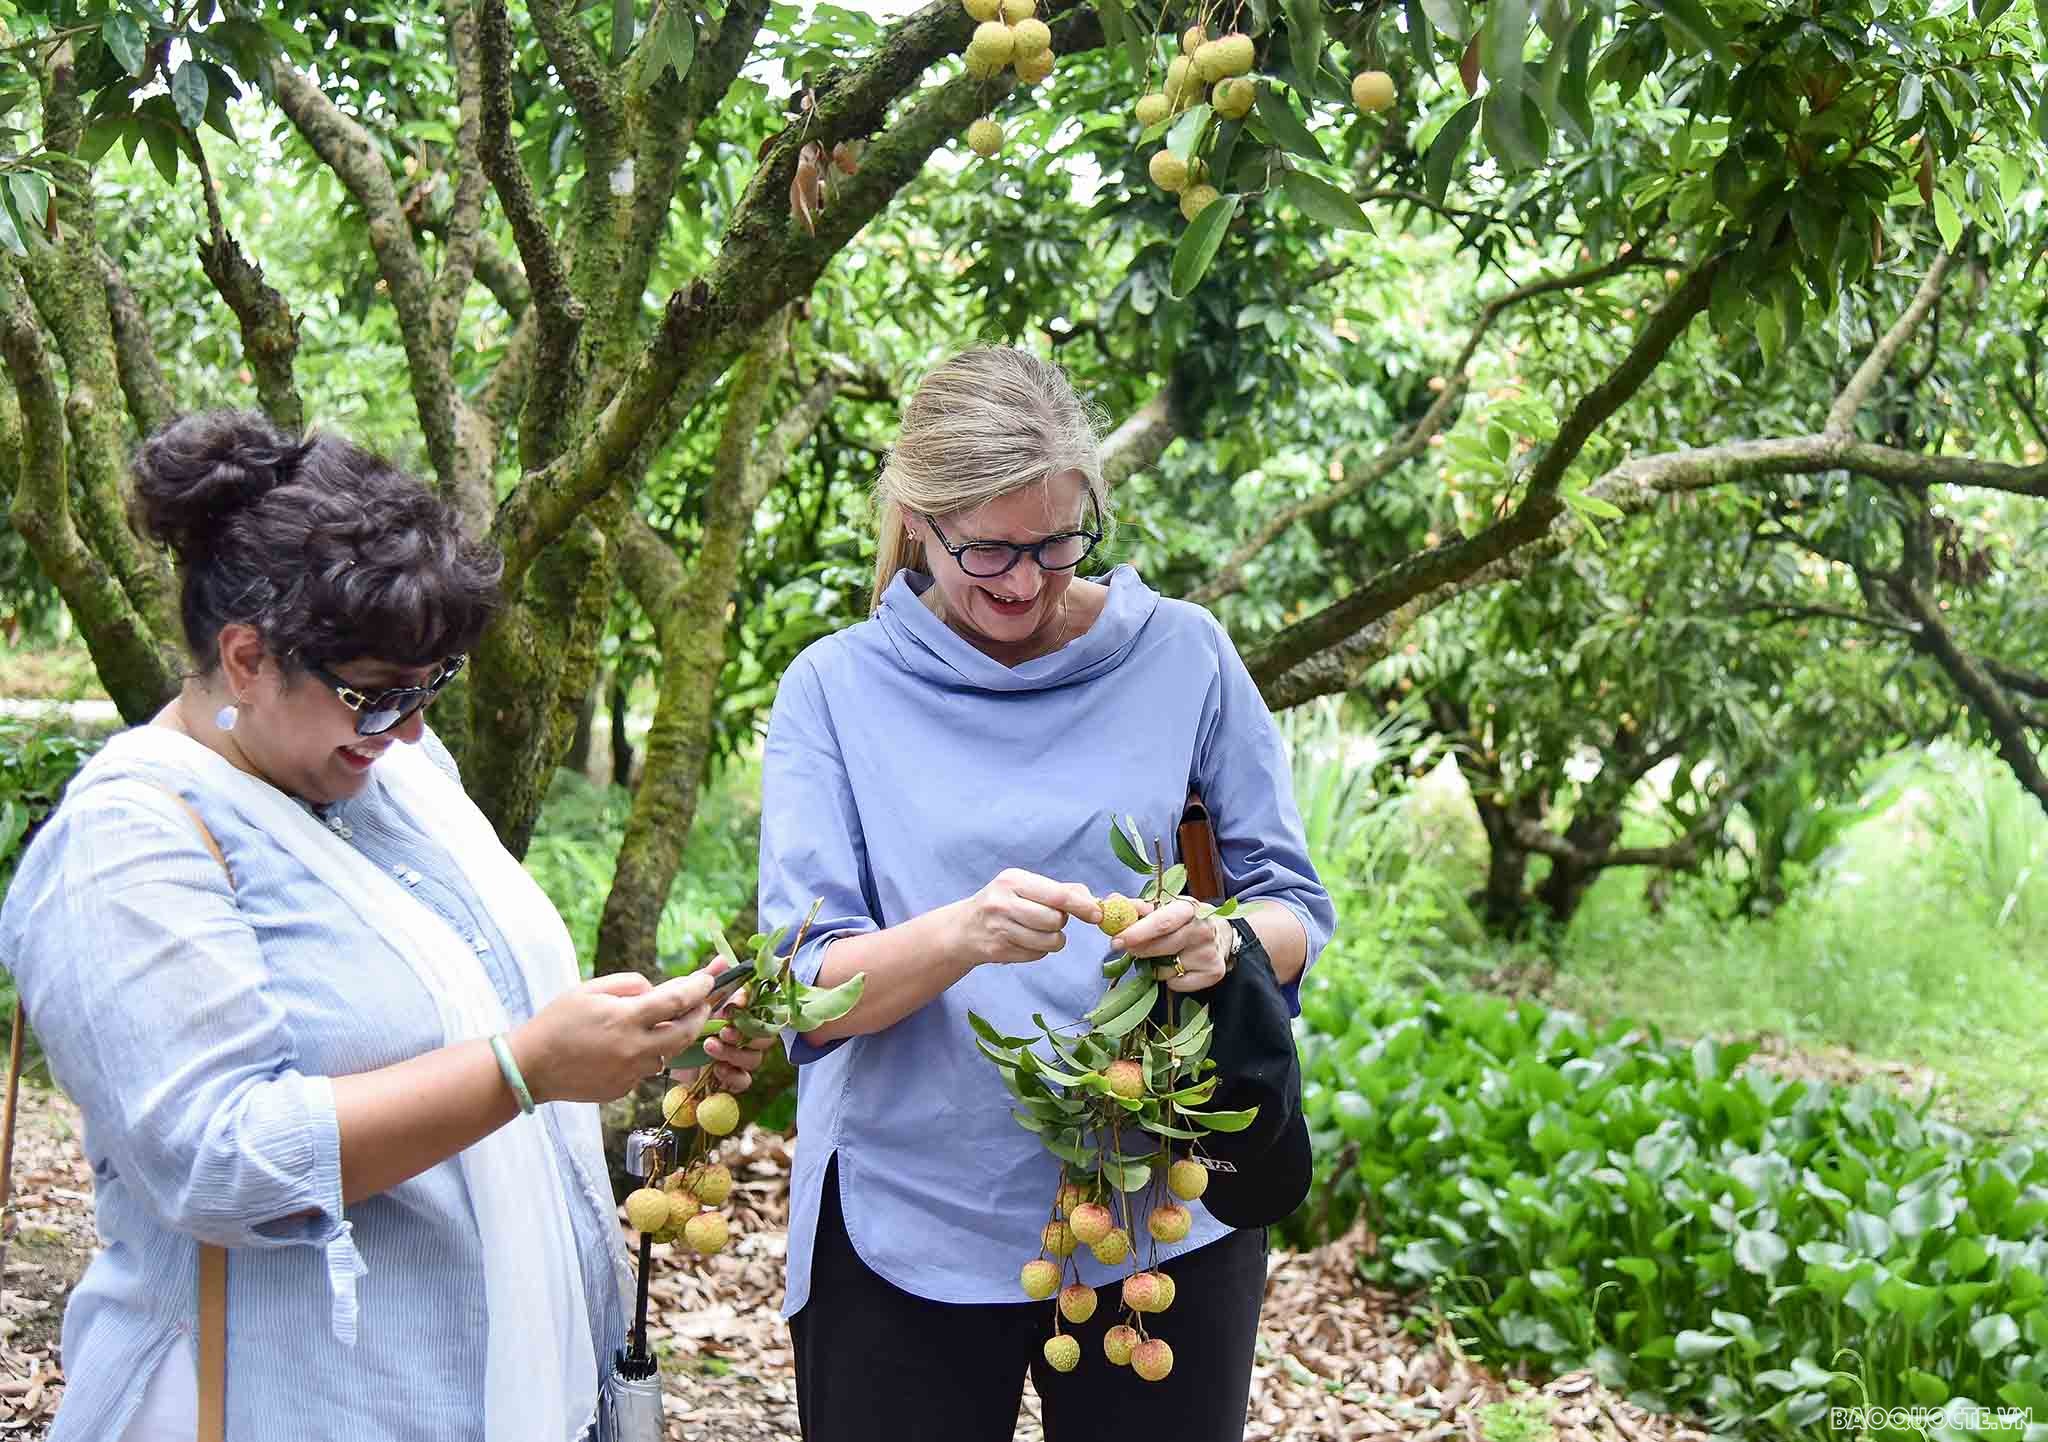 Bè bạn quốc tế thăm quan cây vải tổ, trải nghiệm hái vải và làm bánh đậu xanh tại Hải Dương